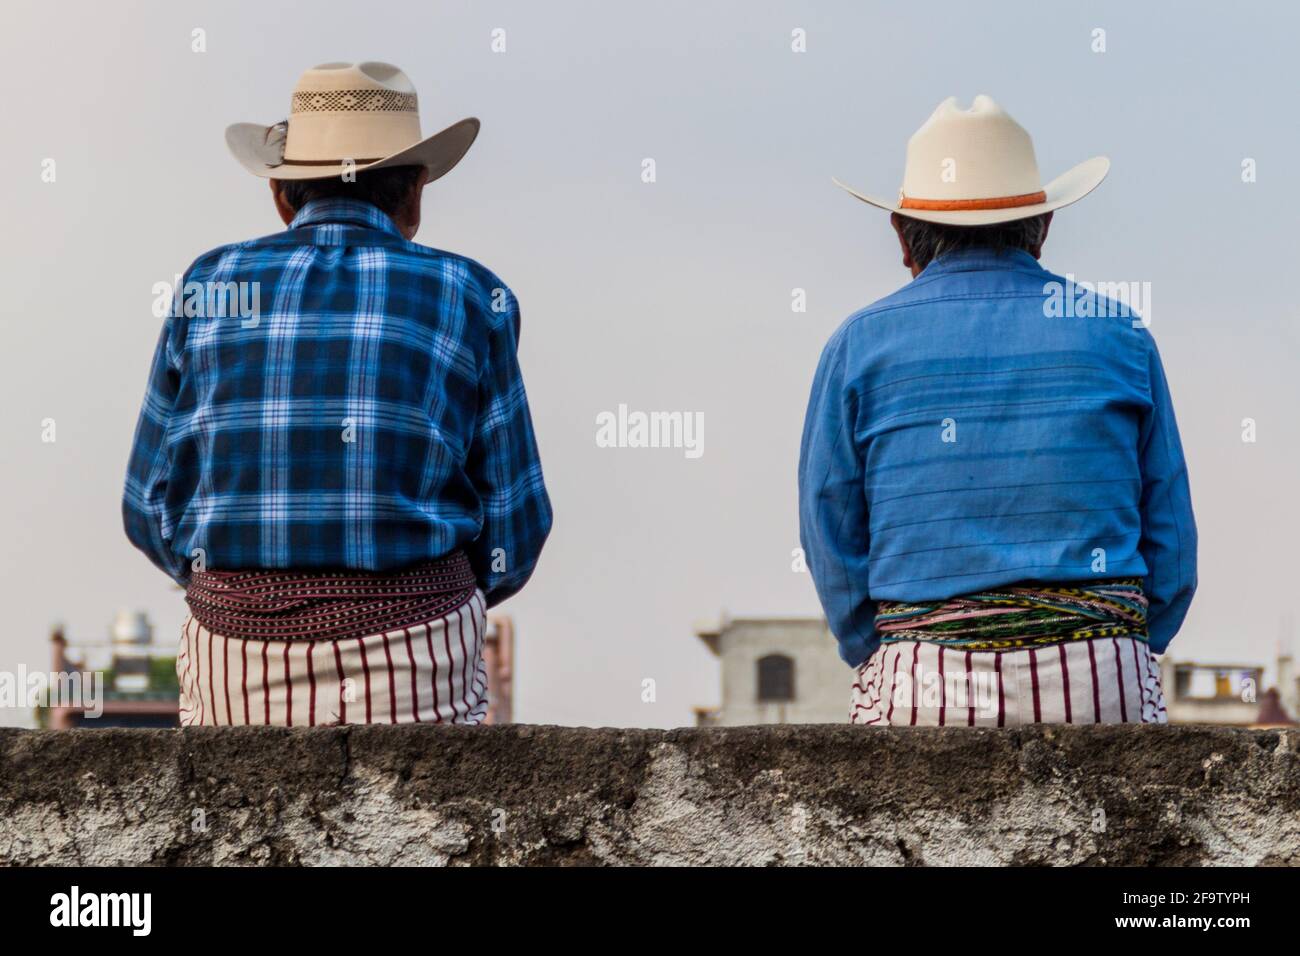 SANTIAGO ATITLAN, GUATEMALA - 23. MÄRZ 2016: Indigene Männer tragen traditionelle Kleidung dieses Dorfes. Stockfoto